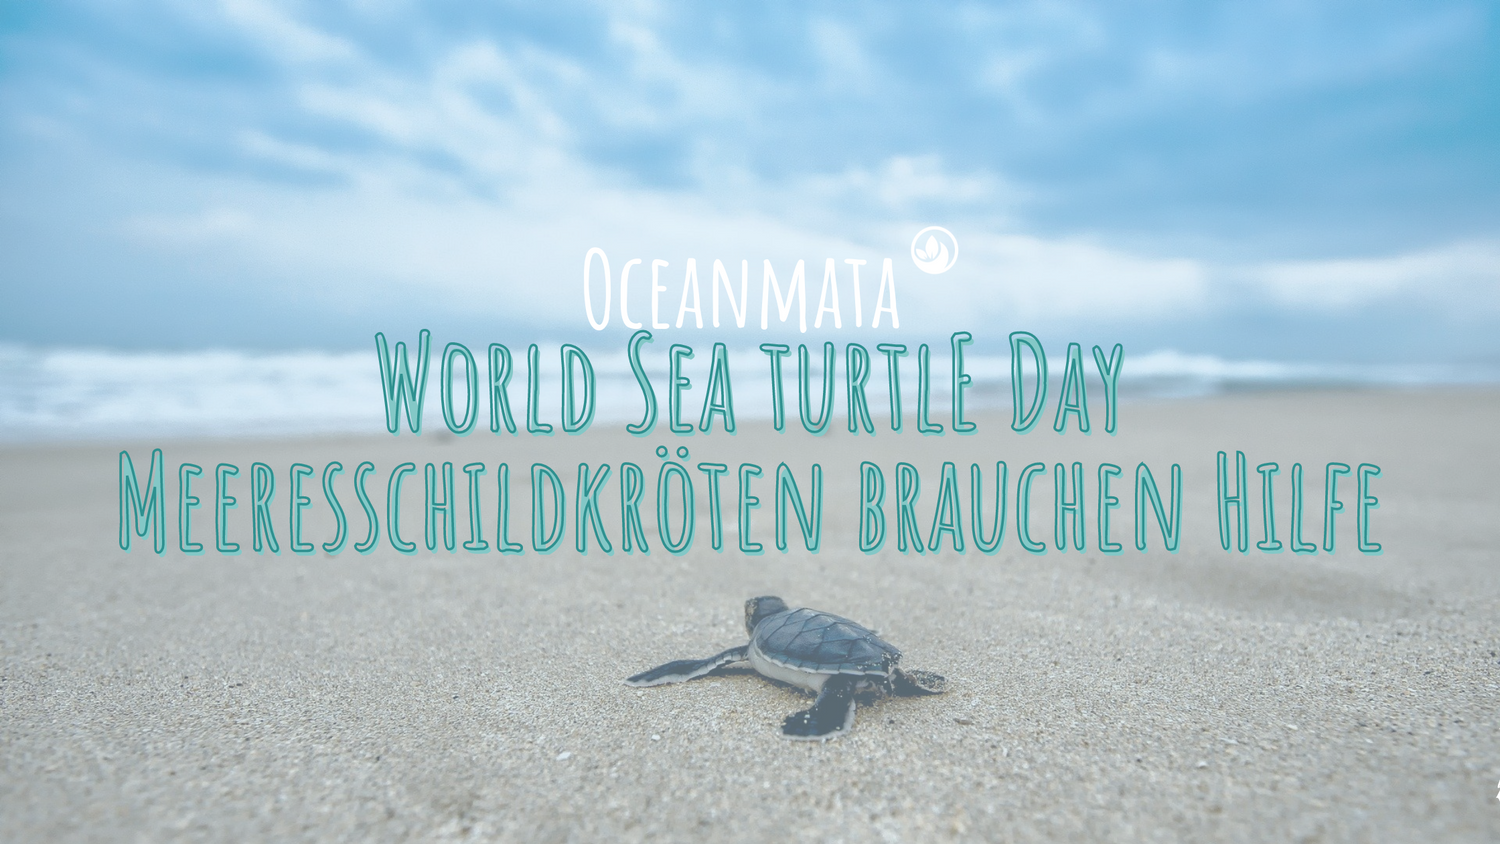 "World Sea Turtle Day" - Meeresschildkröten brauchen deine Hilfe!